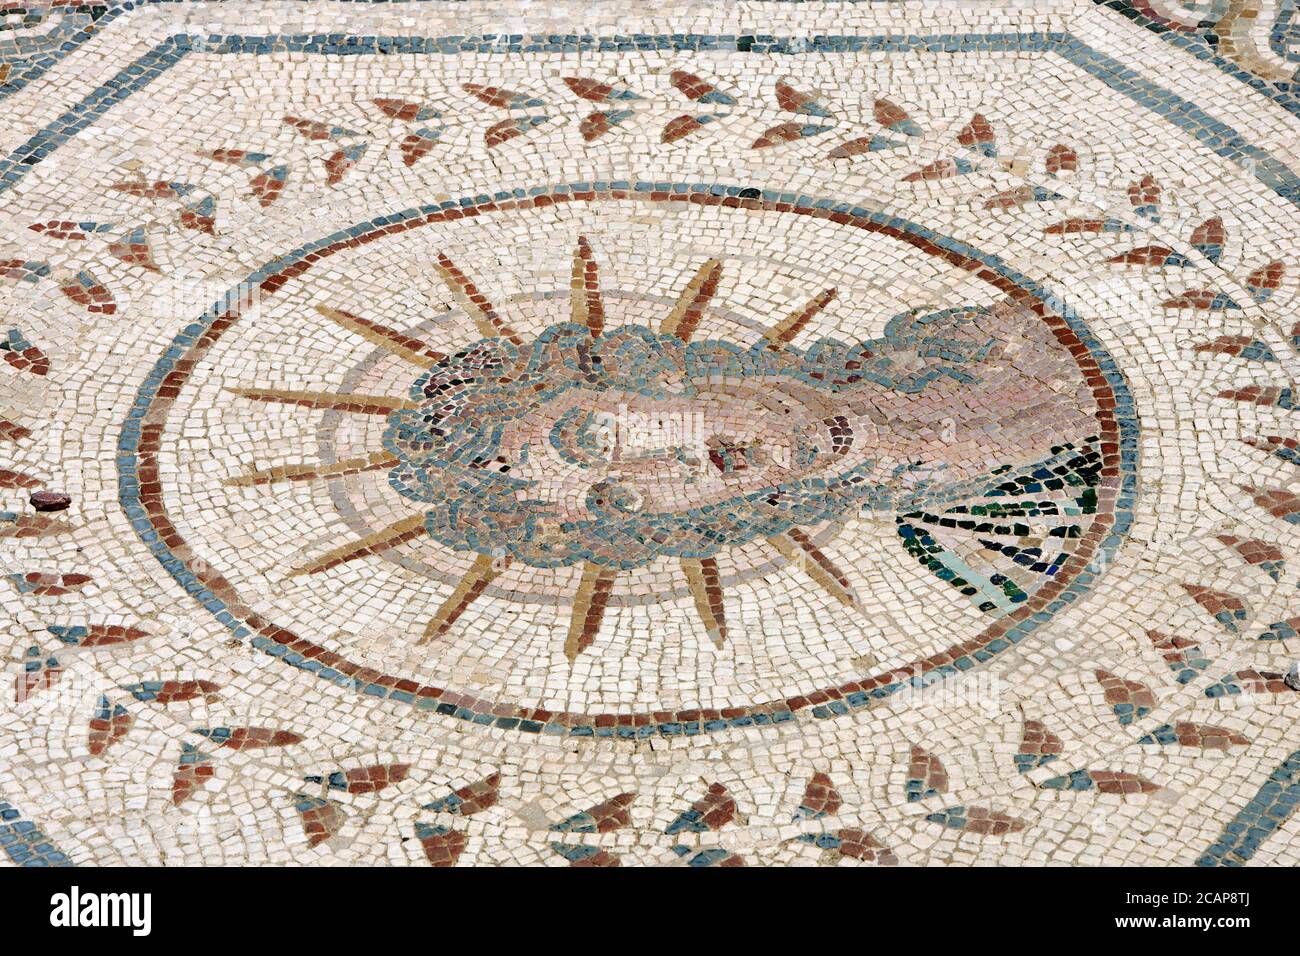 Spanien, Andalusien, Provinz Sevilla, Santiponce. Römische Stadt Italica. Gegründet 206 v. Chr. durch den römischen General Scipio. Haus des Planetariums. Mosaik, das die sieben Sterne des Sonnensystems darstellt, die damals von den Römern bekannt waren. Jeder Planet wird von einem gott personifiziert, der wiederum einen Tag der Woche symbolisiert. Detail von Helios oder Sol, der Sonne 'Sol Invictus' (Sonntag). Die Sonne trägt eine Krone aus Strahlen. Stockfoto